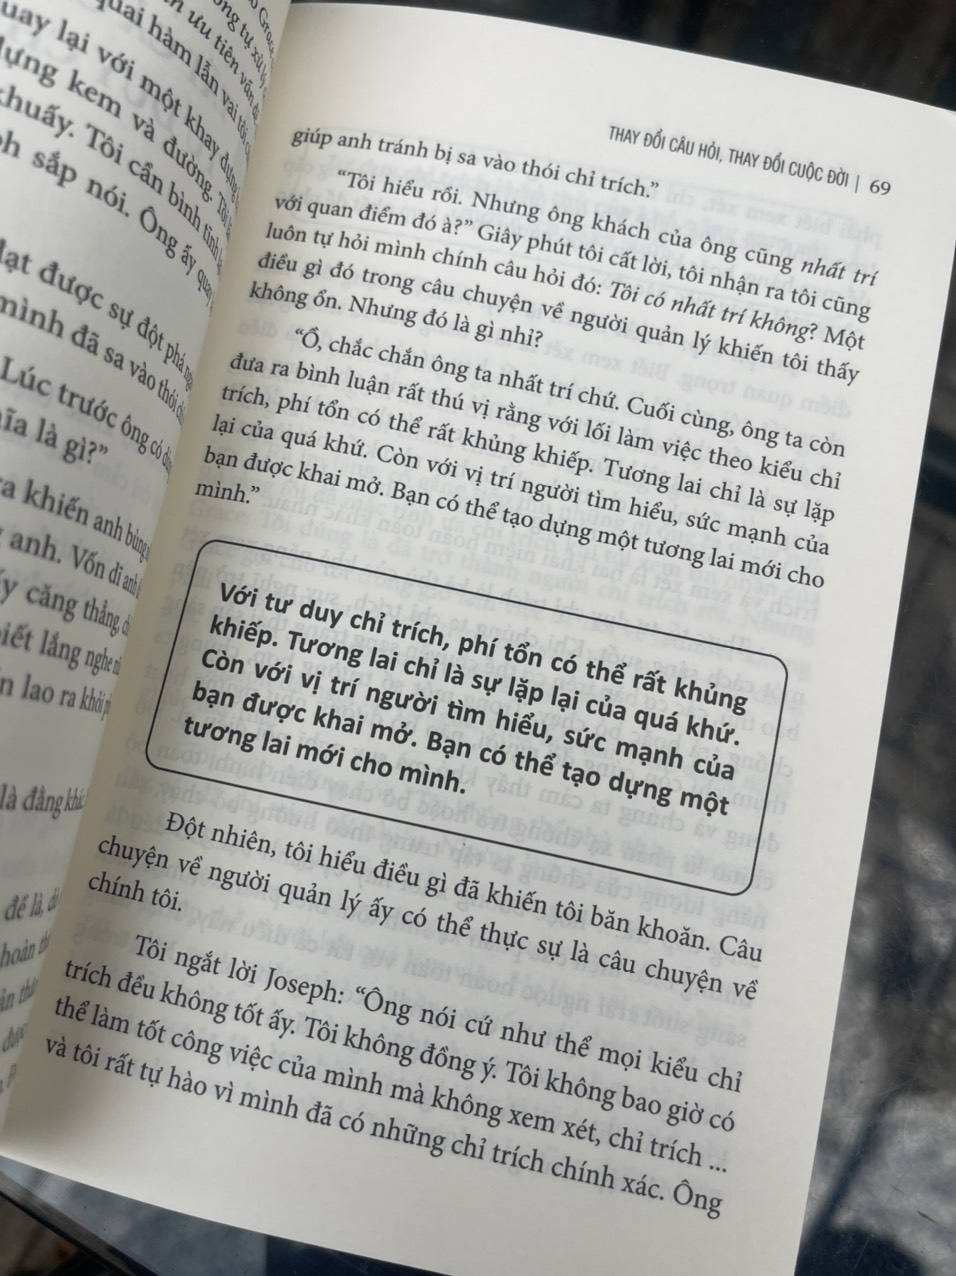 THAY ĐỔI CÂU HỎI THAY ĐỔI CUỘC ĐỜI – Marilee Adams – Tân Việt Books – NXB Lao Động (bìa mềm)